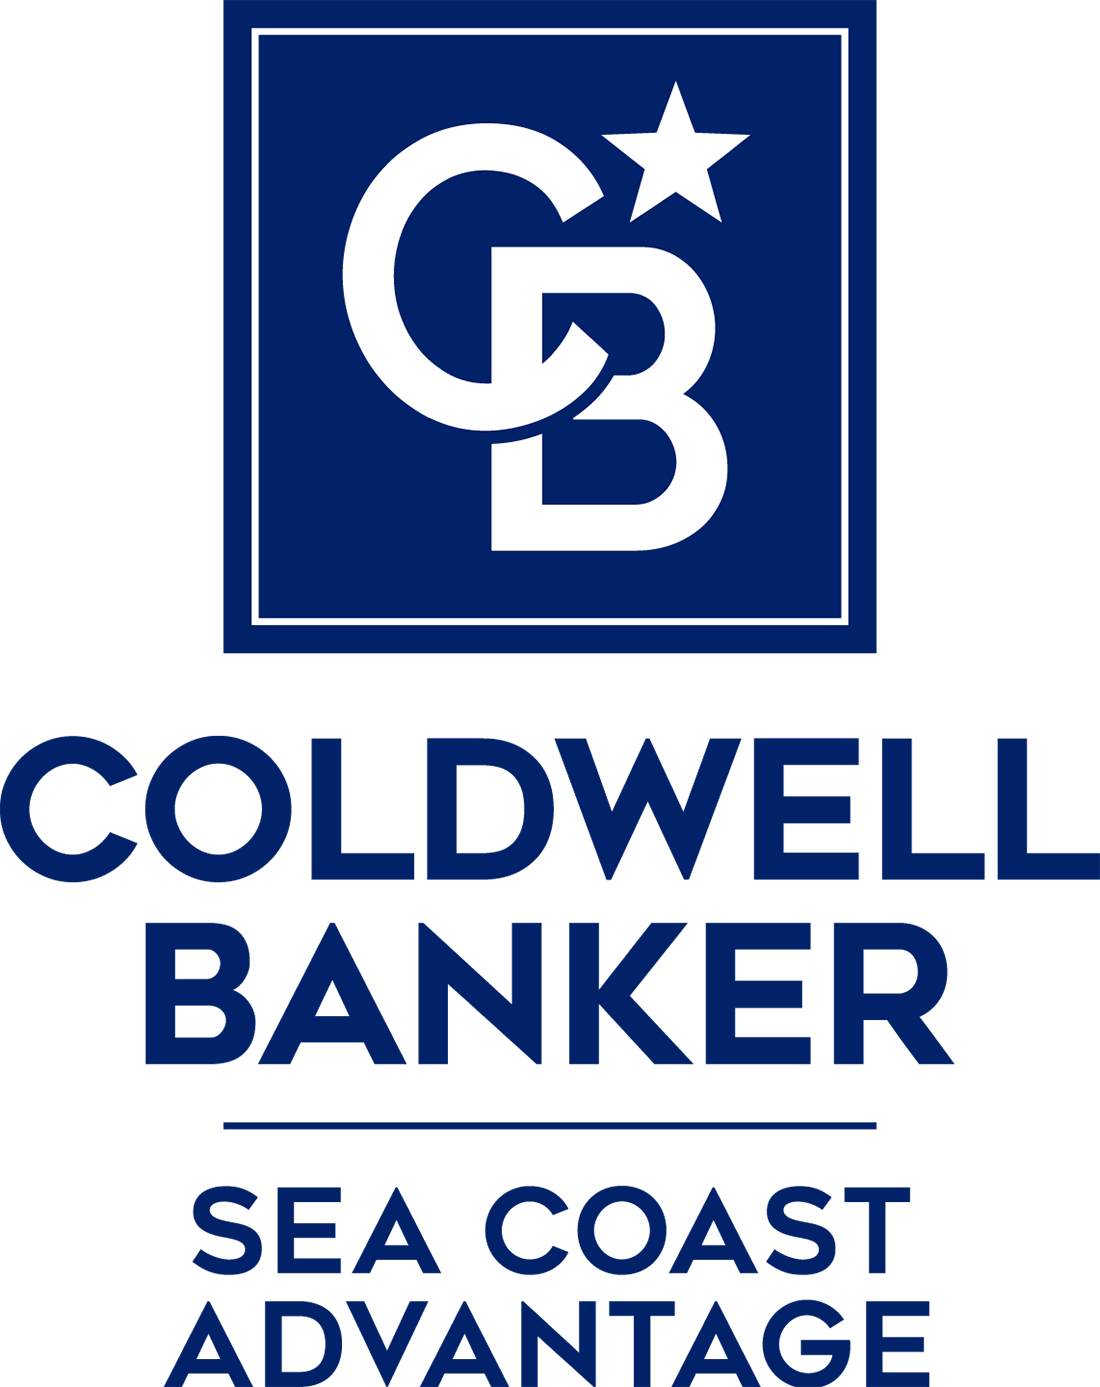 Emily Lulves - Coldwell Banker Sea Coast Advantage Logo